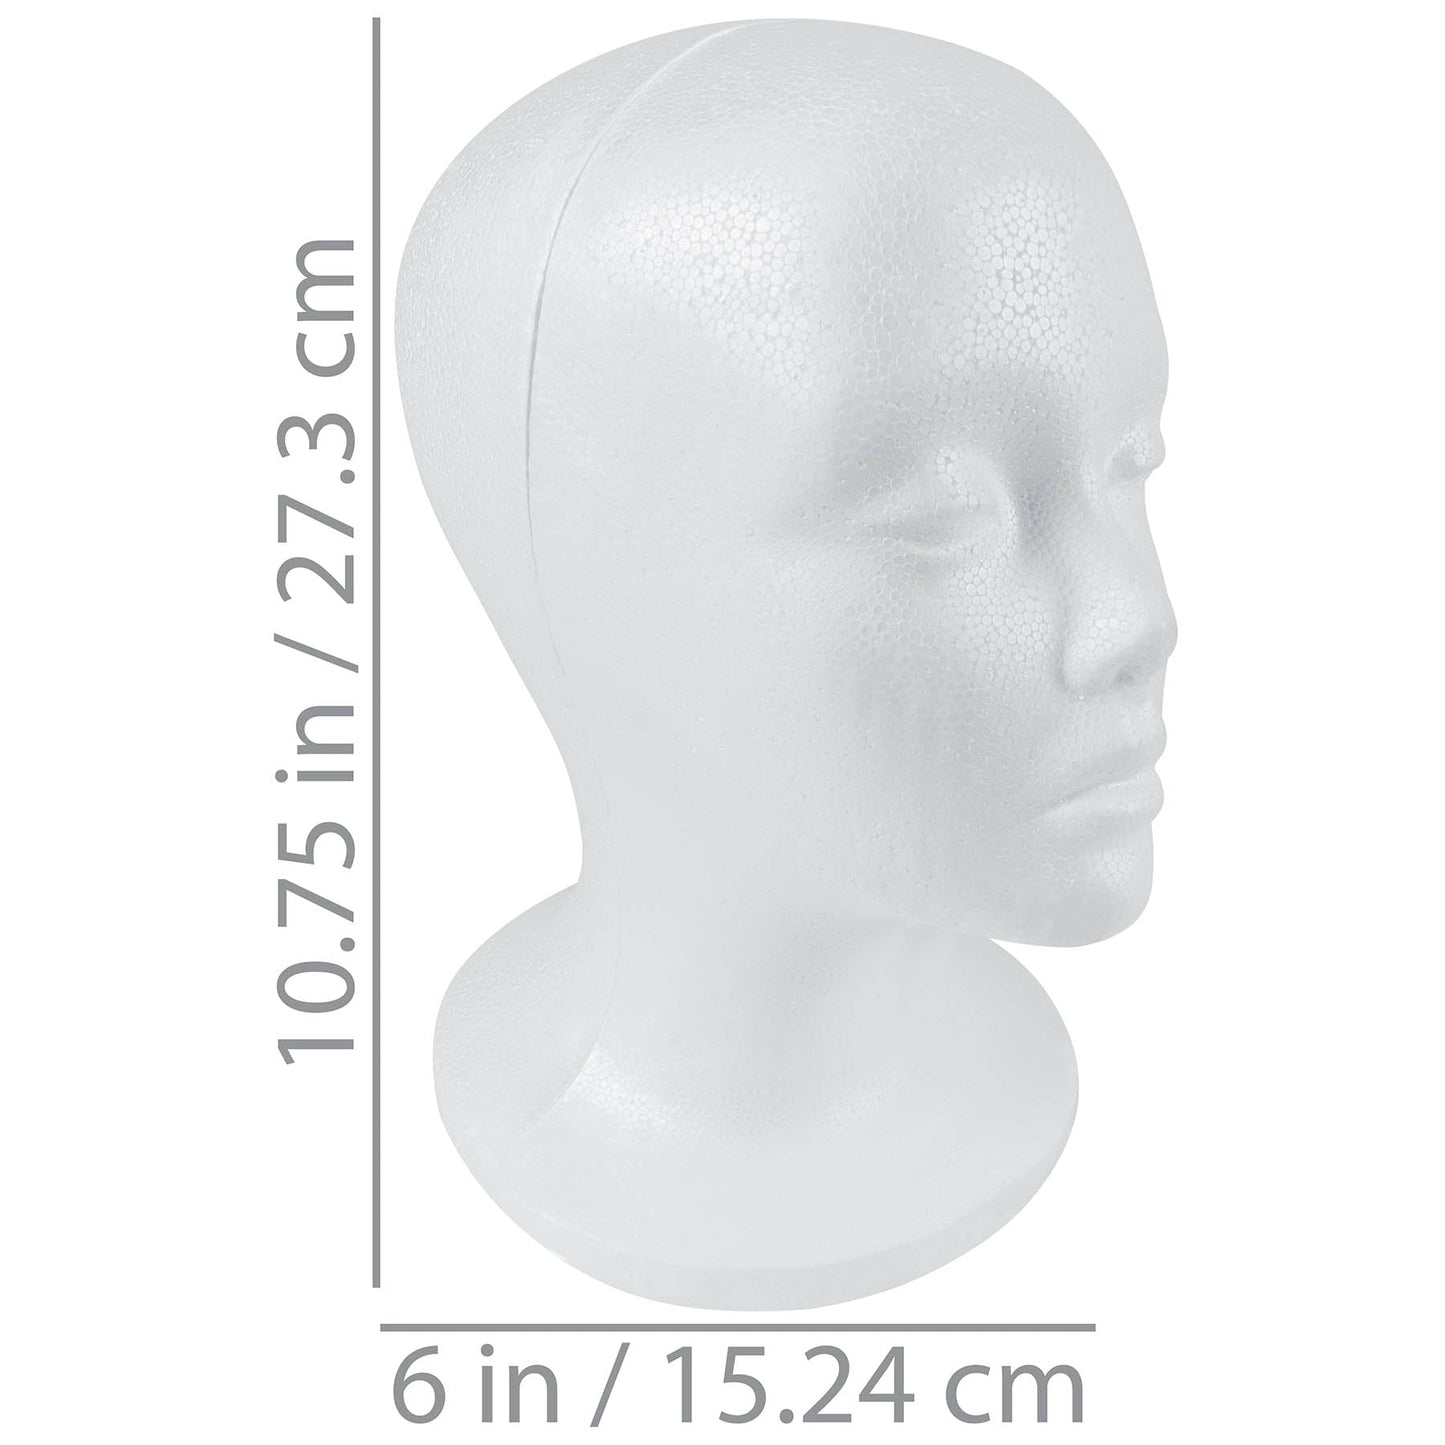 Styrofoam Model Heads/Hat Wig Foam Mannequin